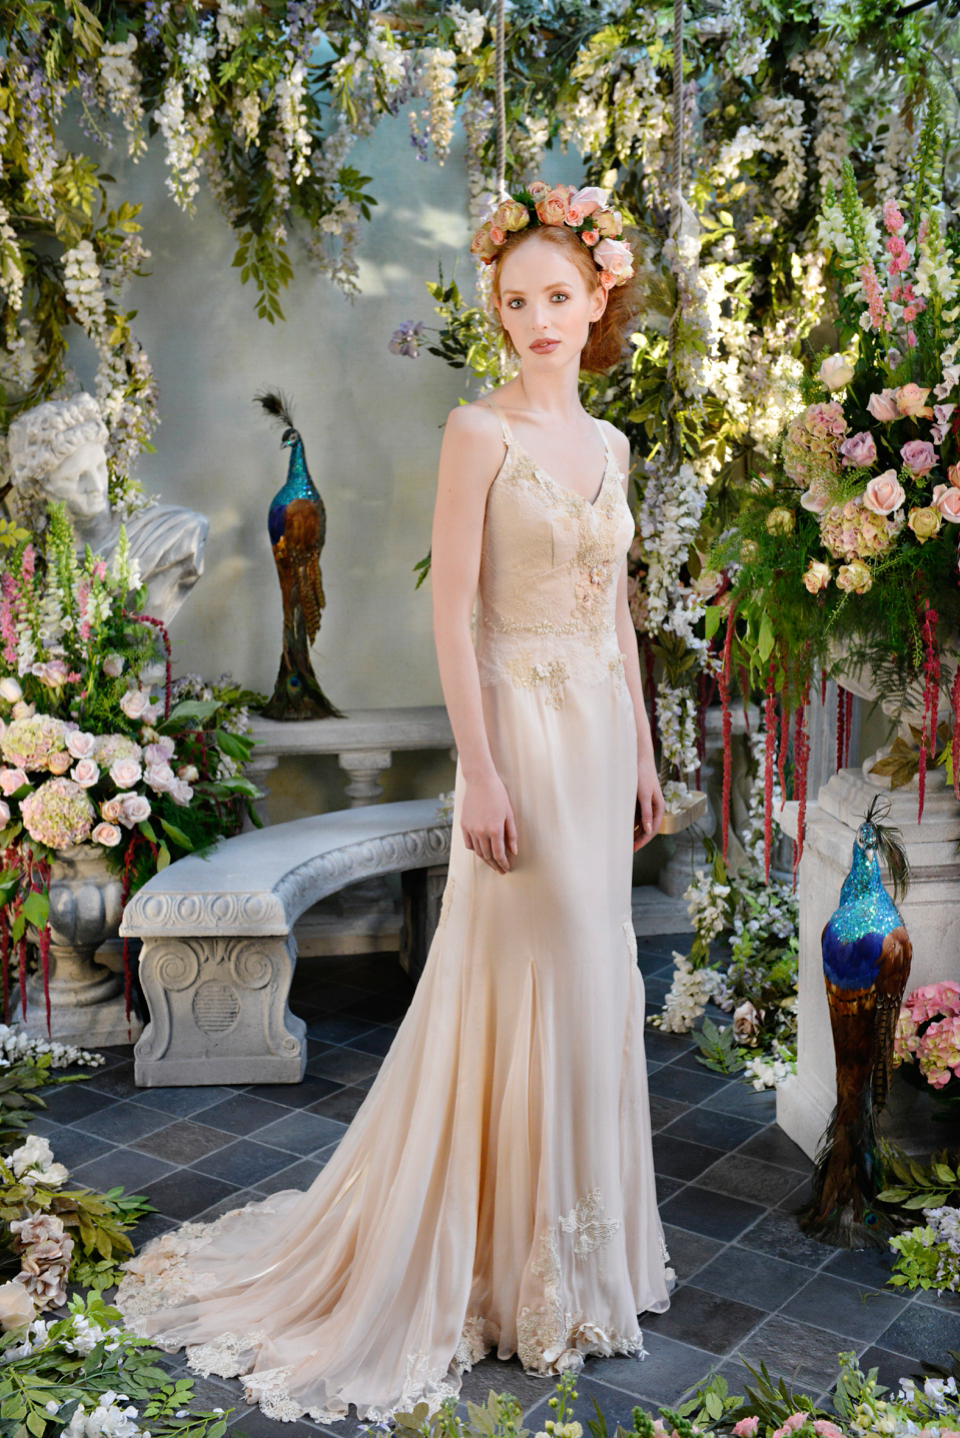 Julia Fox's Wedding Dress is More Sheer Veil Than Actual Gown | Fox wedding,  Sheer wedding dress, Dramatic veil